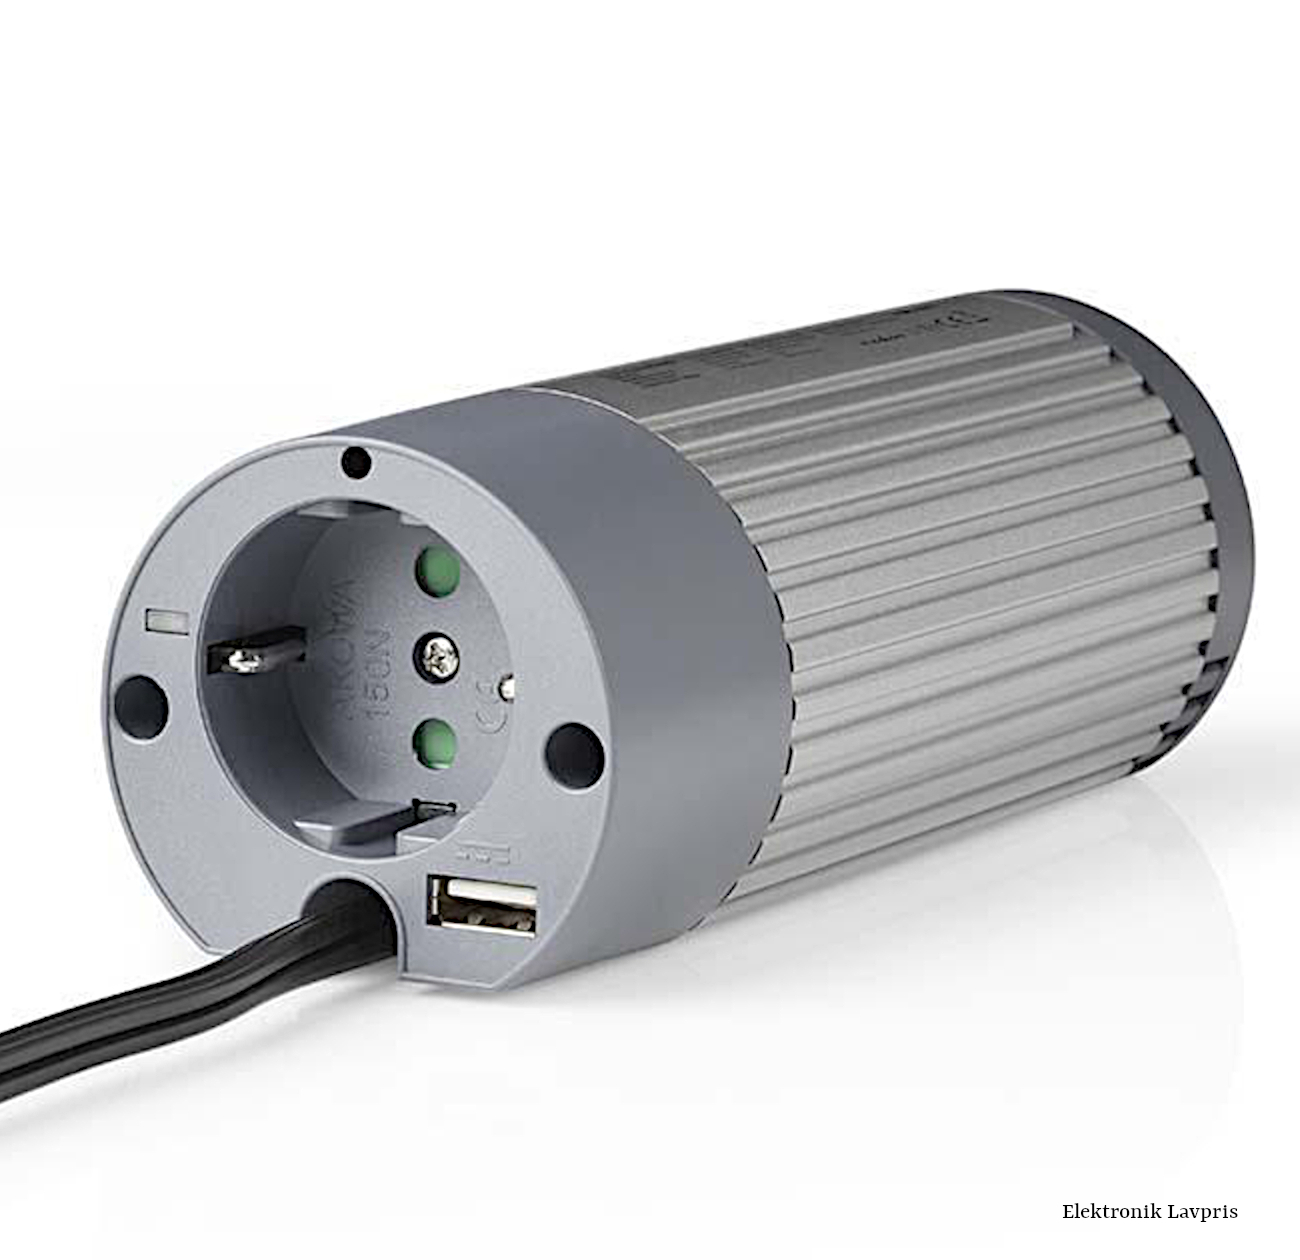 Inverter DC/AC 12V - 230V, USB, 100 W | Elektronik Lavpris Aps